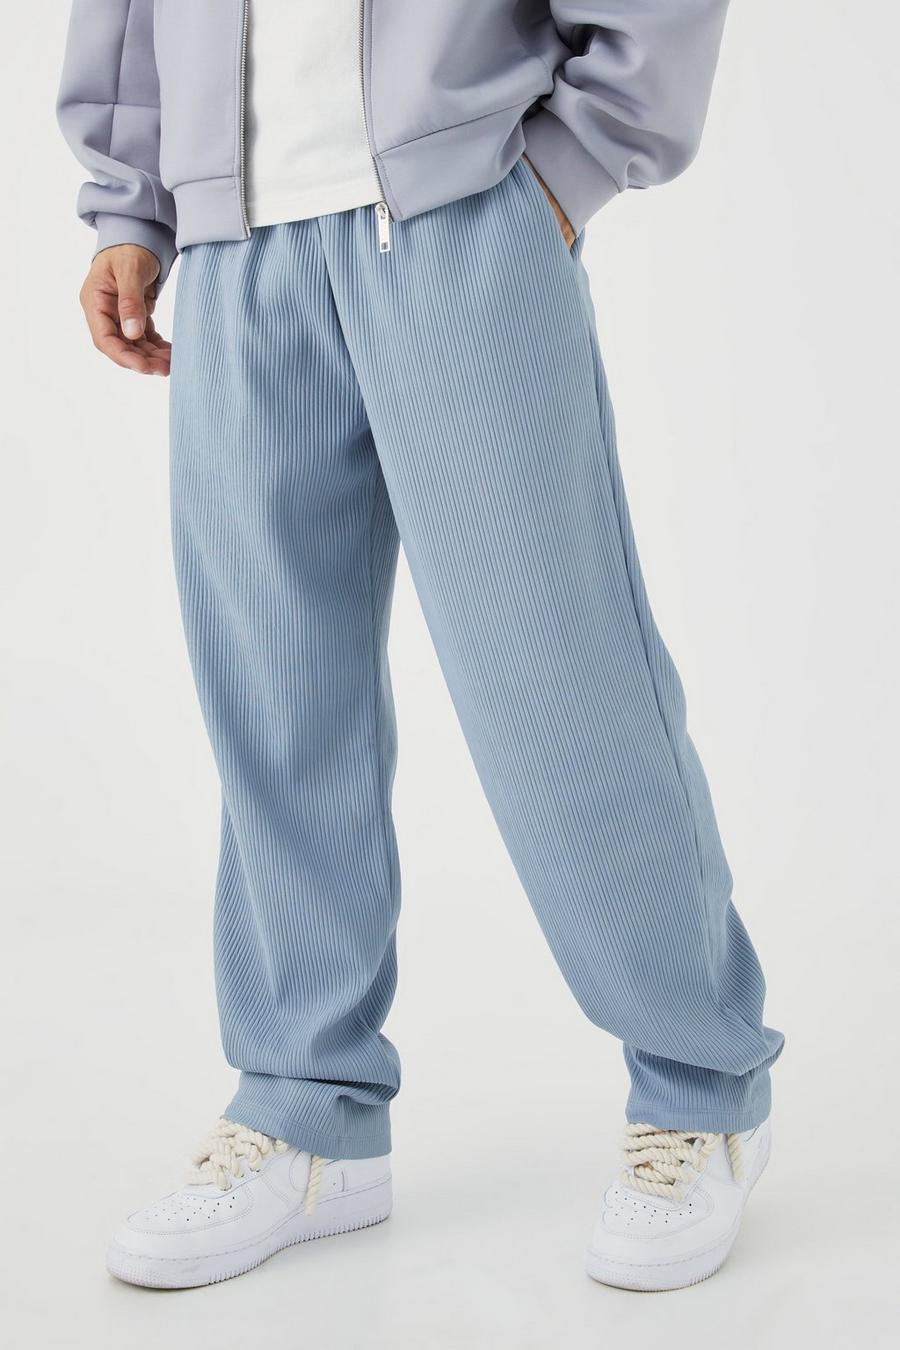 Pantalón de pernera recta plisado grueso, Blue image number 1